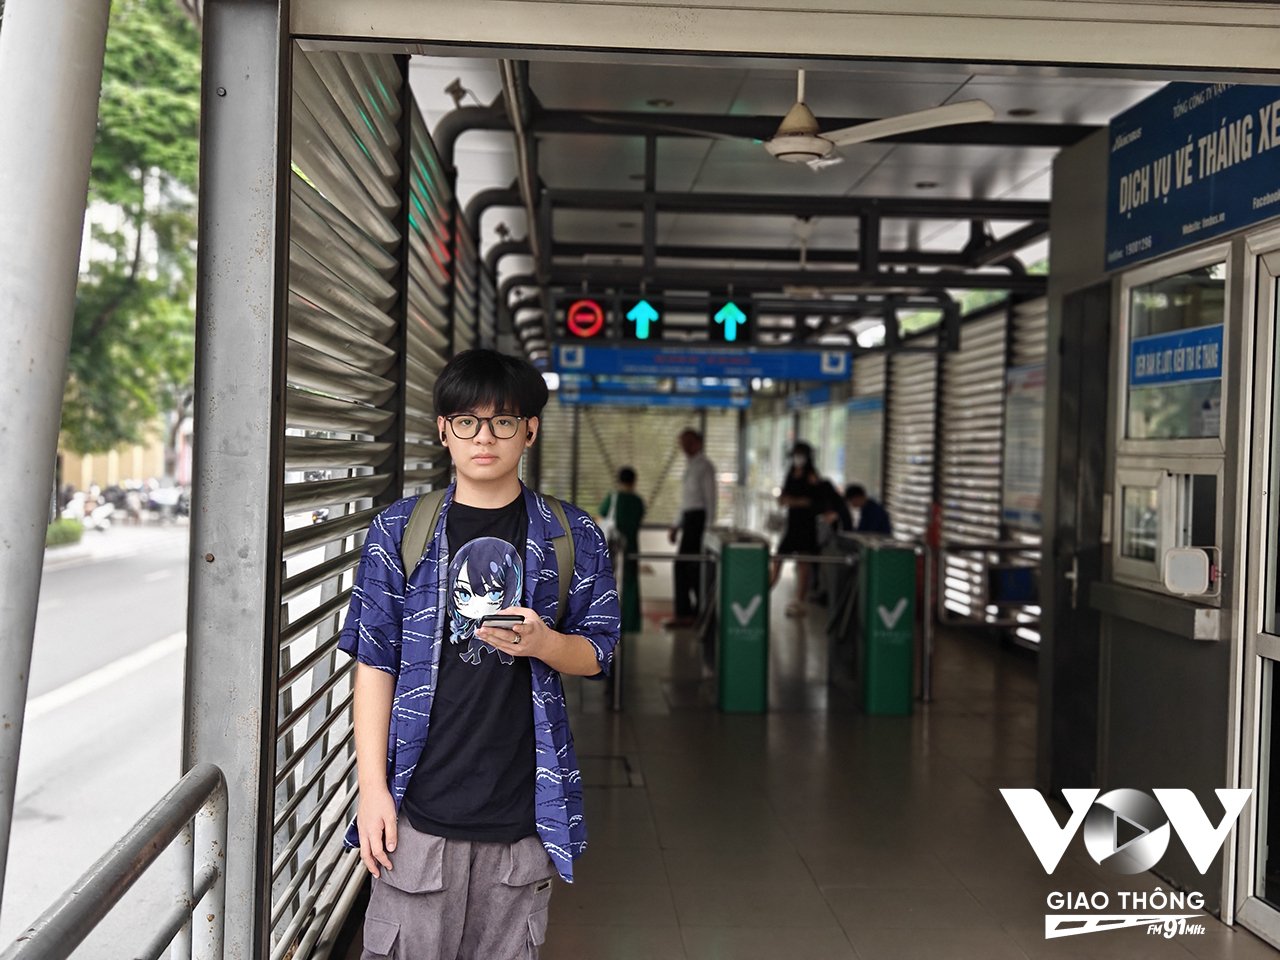 Hành khách Nguyễn Quang Đức cho rằng, việc giữ hay bỏ BRT thì không quá ảnh hưởng tới việc đi lại của bản thân